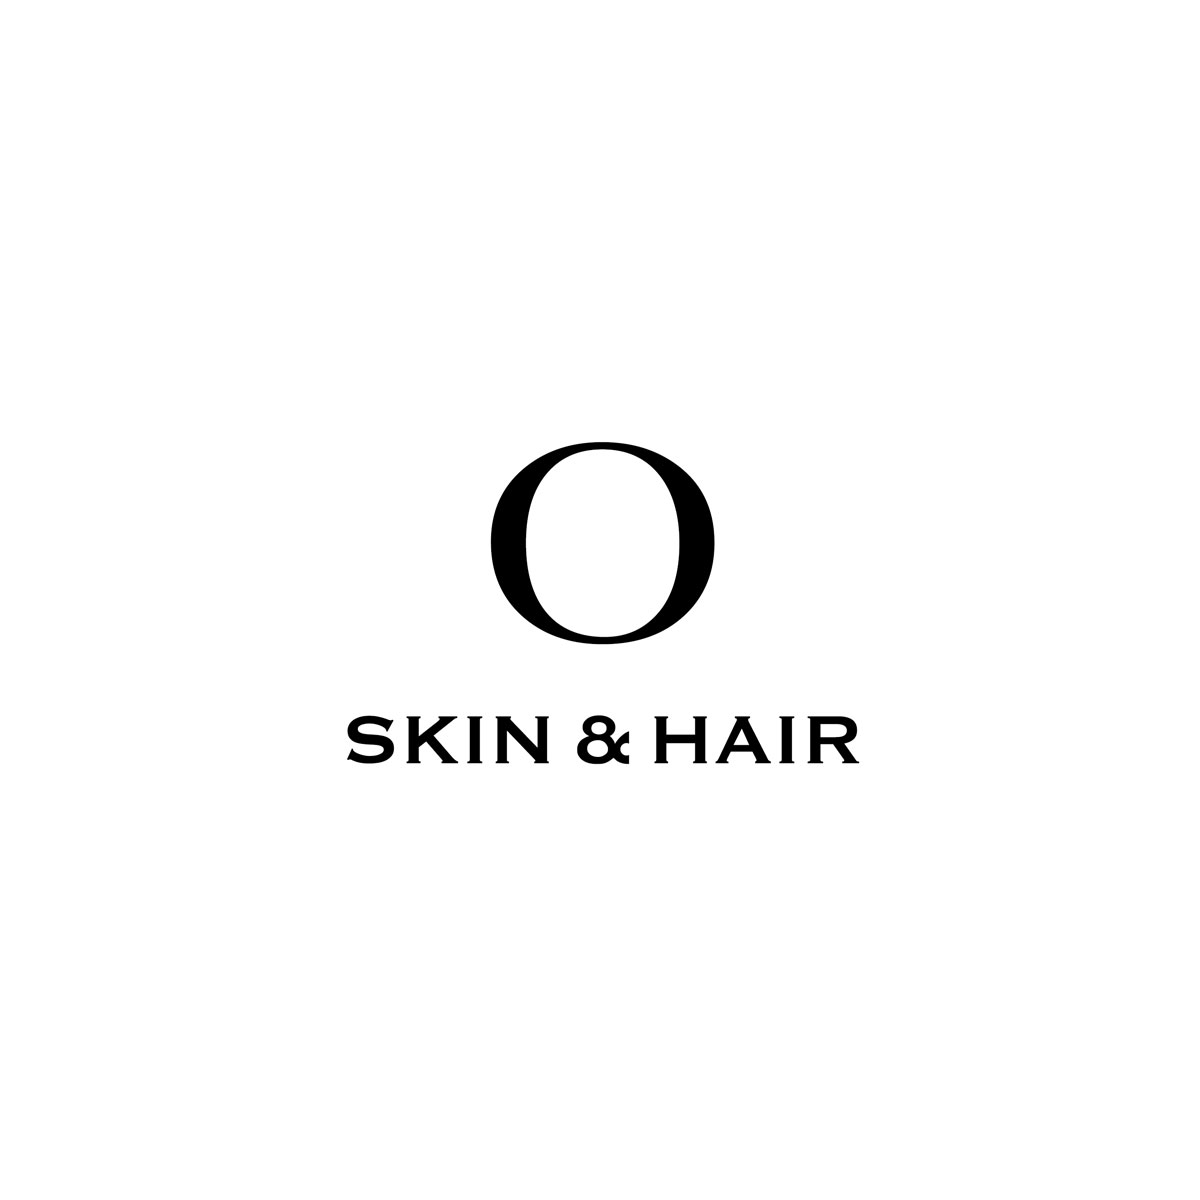 O SKIN & HAIR